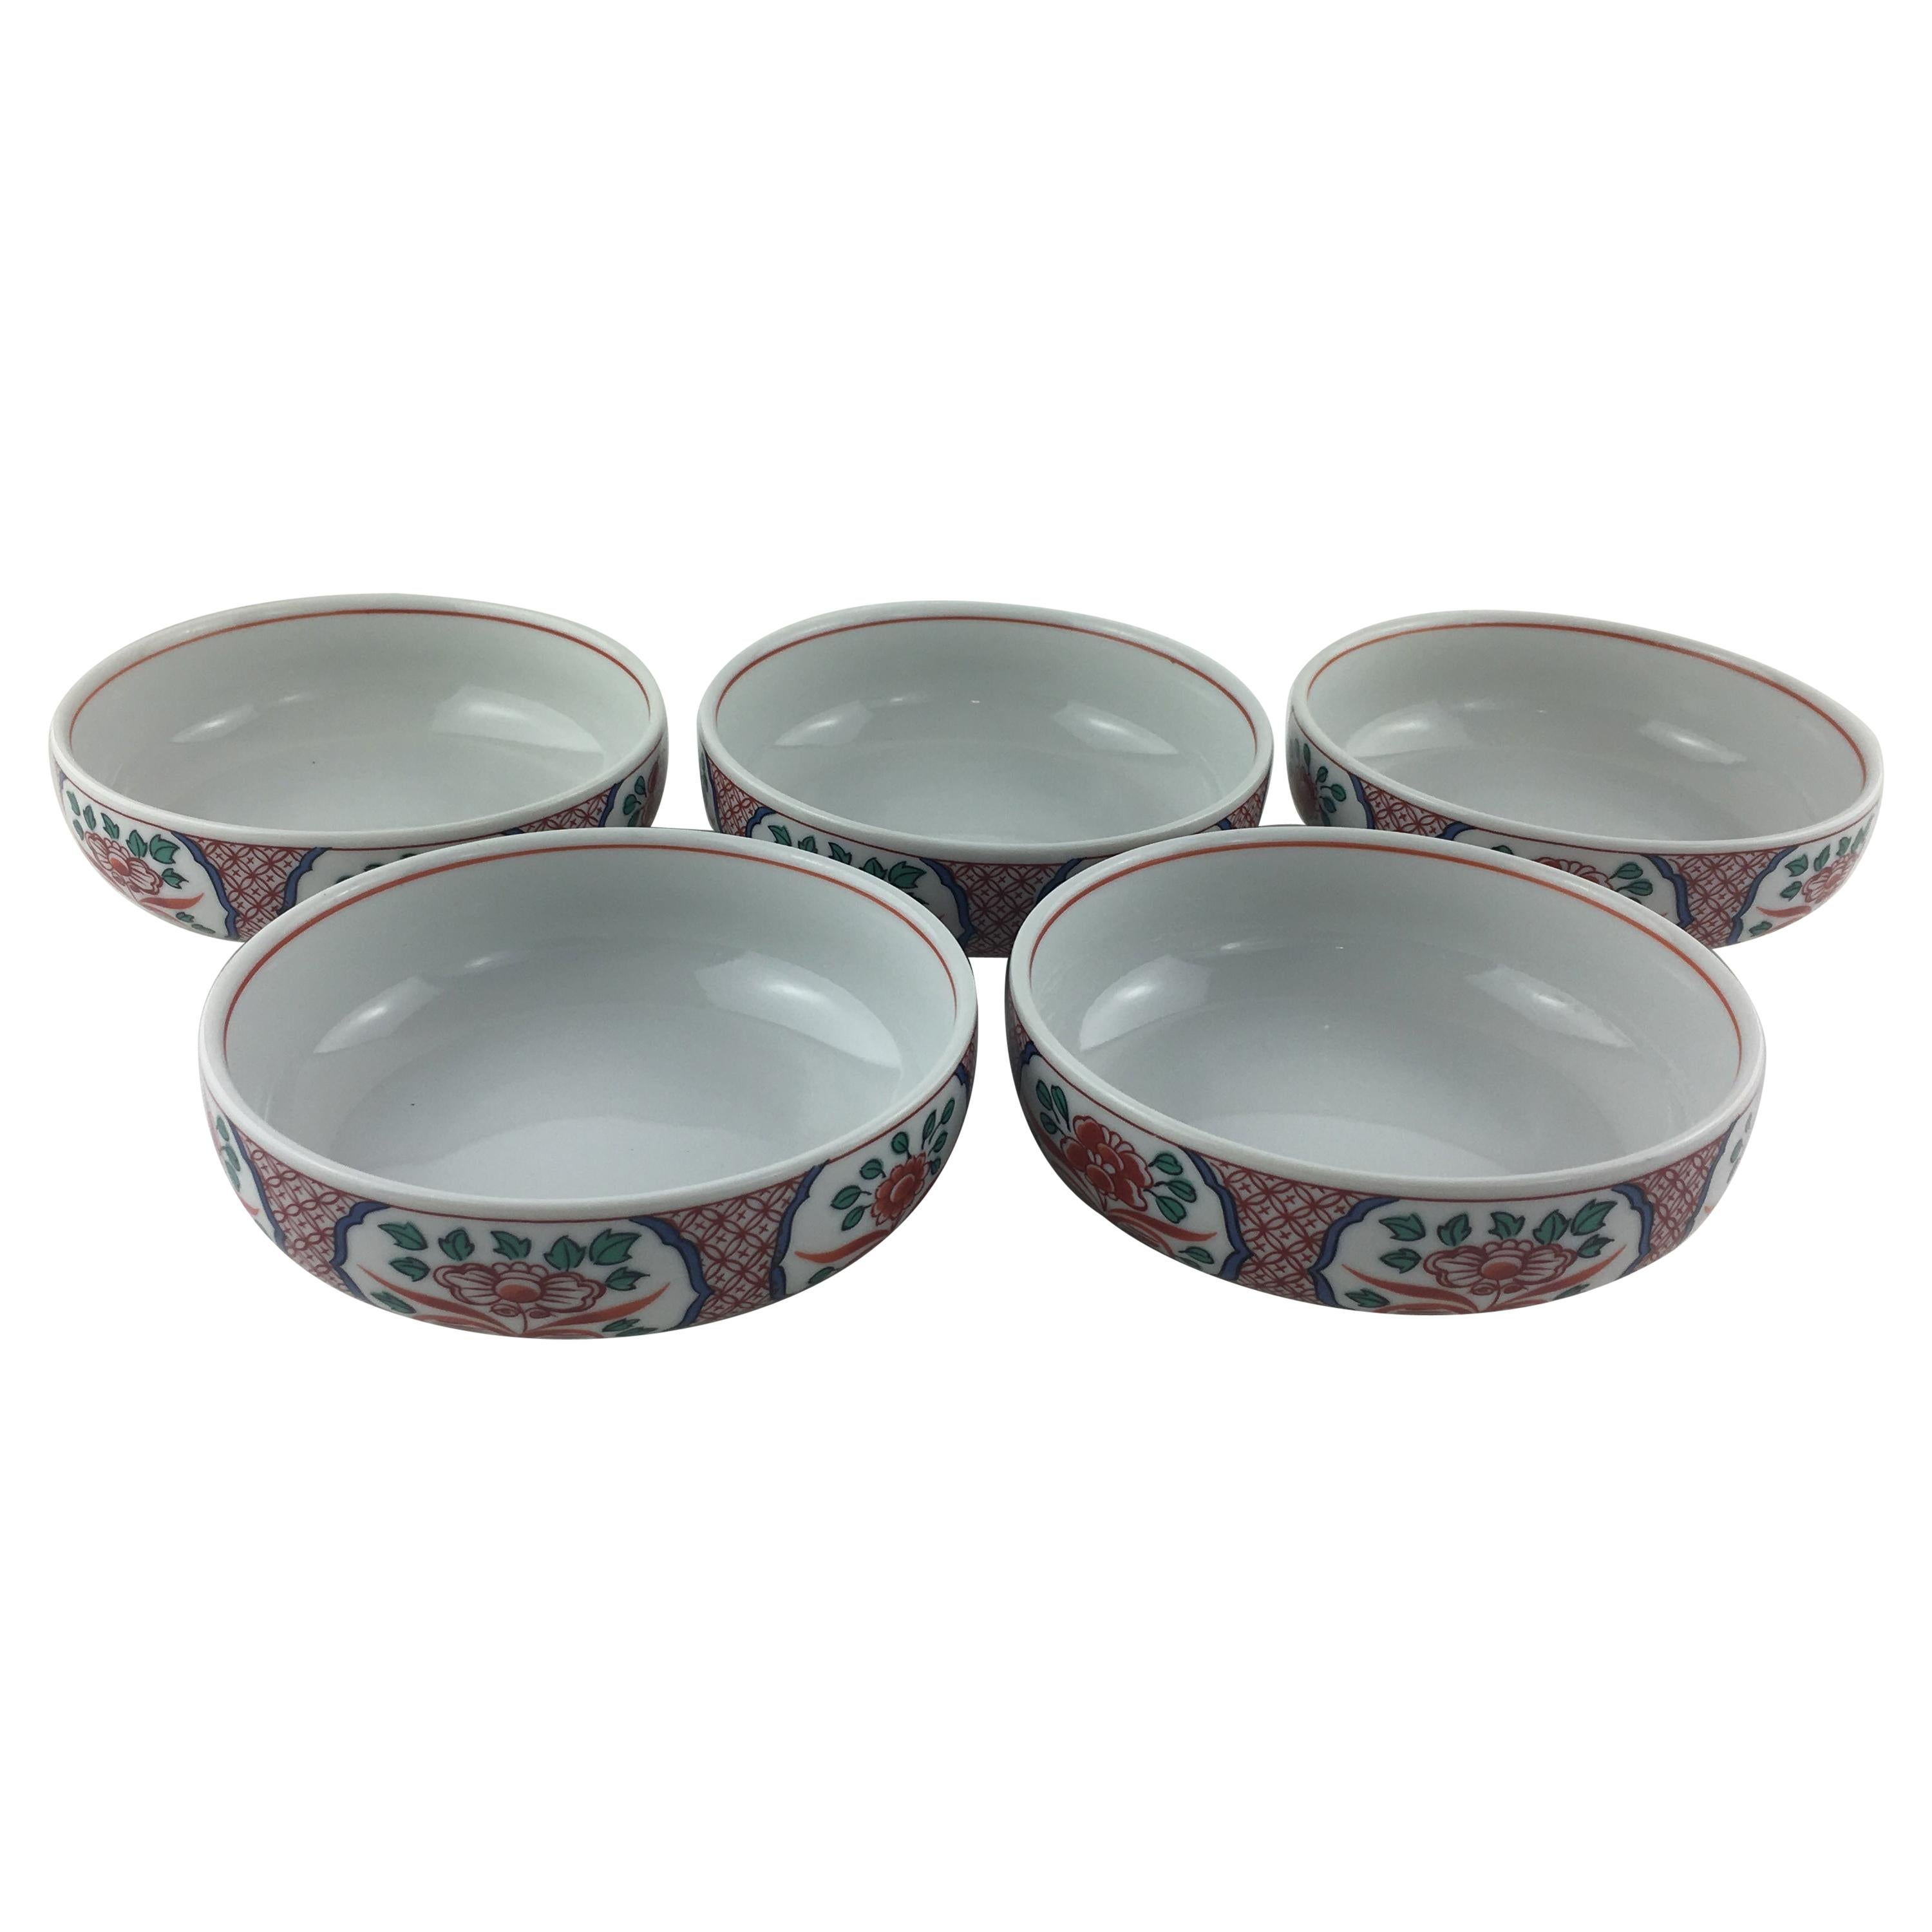 Collection de cinq bols en porcelaine japonaise Imari, peints à la main